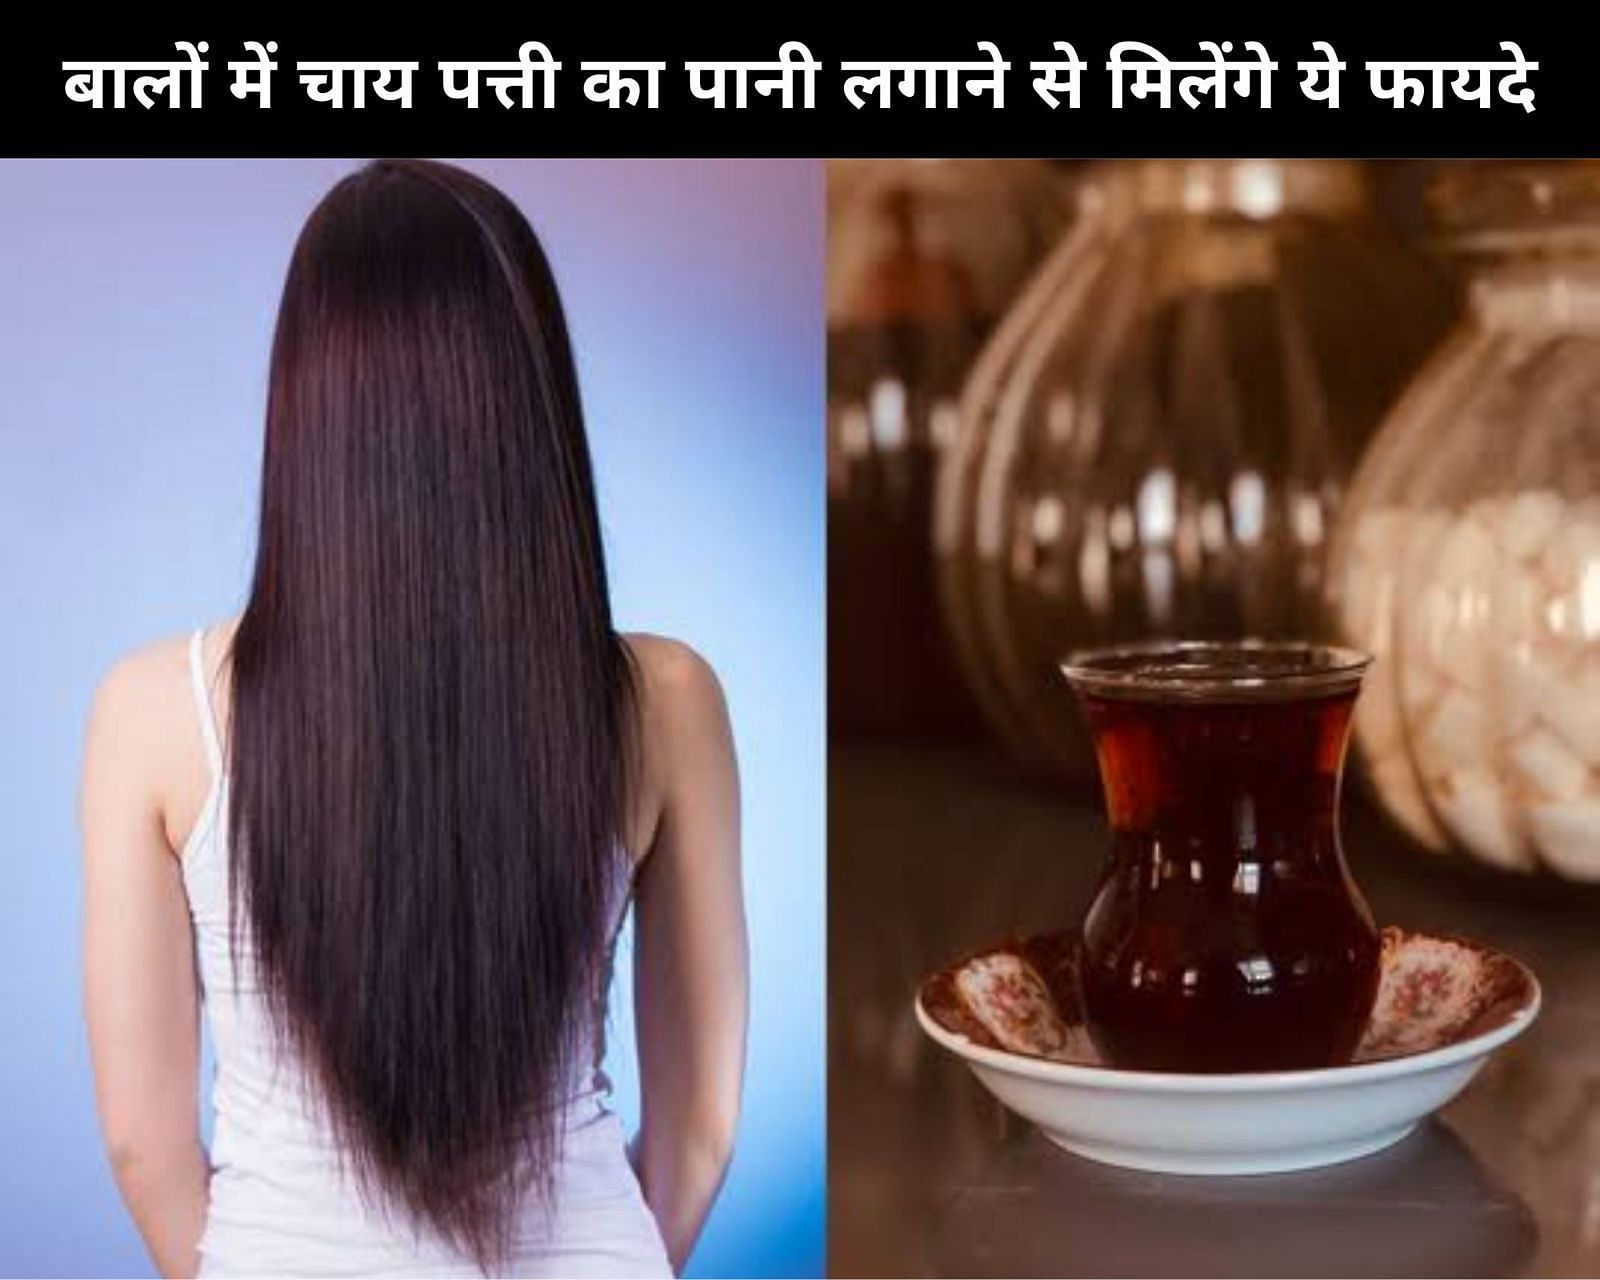 बालों में चाय पत्ती का पानी लगाने से मिलेंगे ये 5 फायदे (फोटो - sportskeedaहिन्दी)